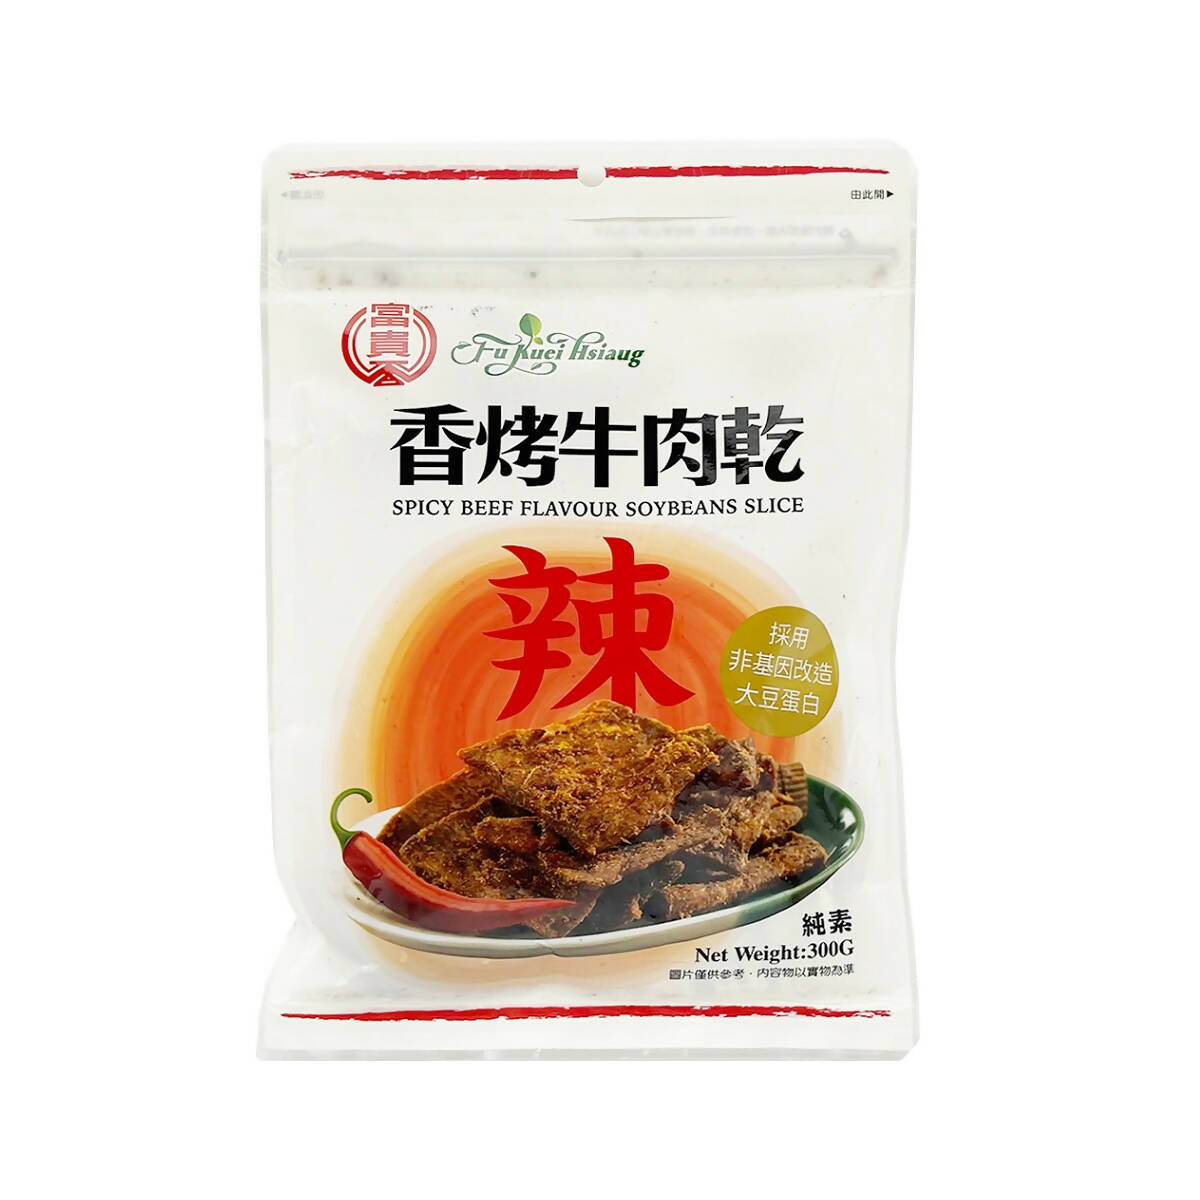 Taiwan Direct Mail【Fuguixiang】 FU KUEI HSIANG Spicy Roast Beef Jerky (Vegan) 300g 